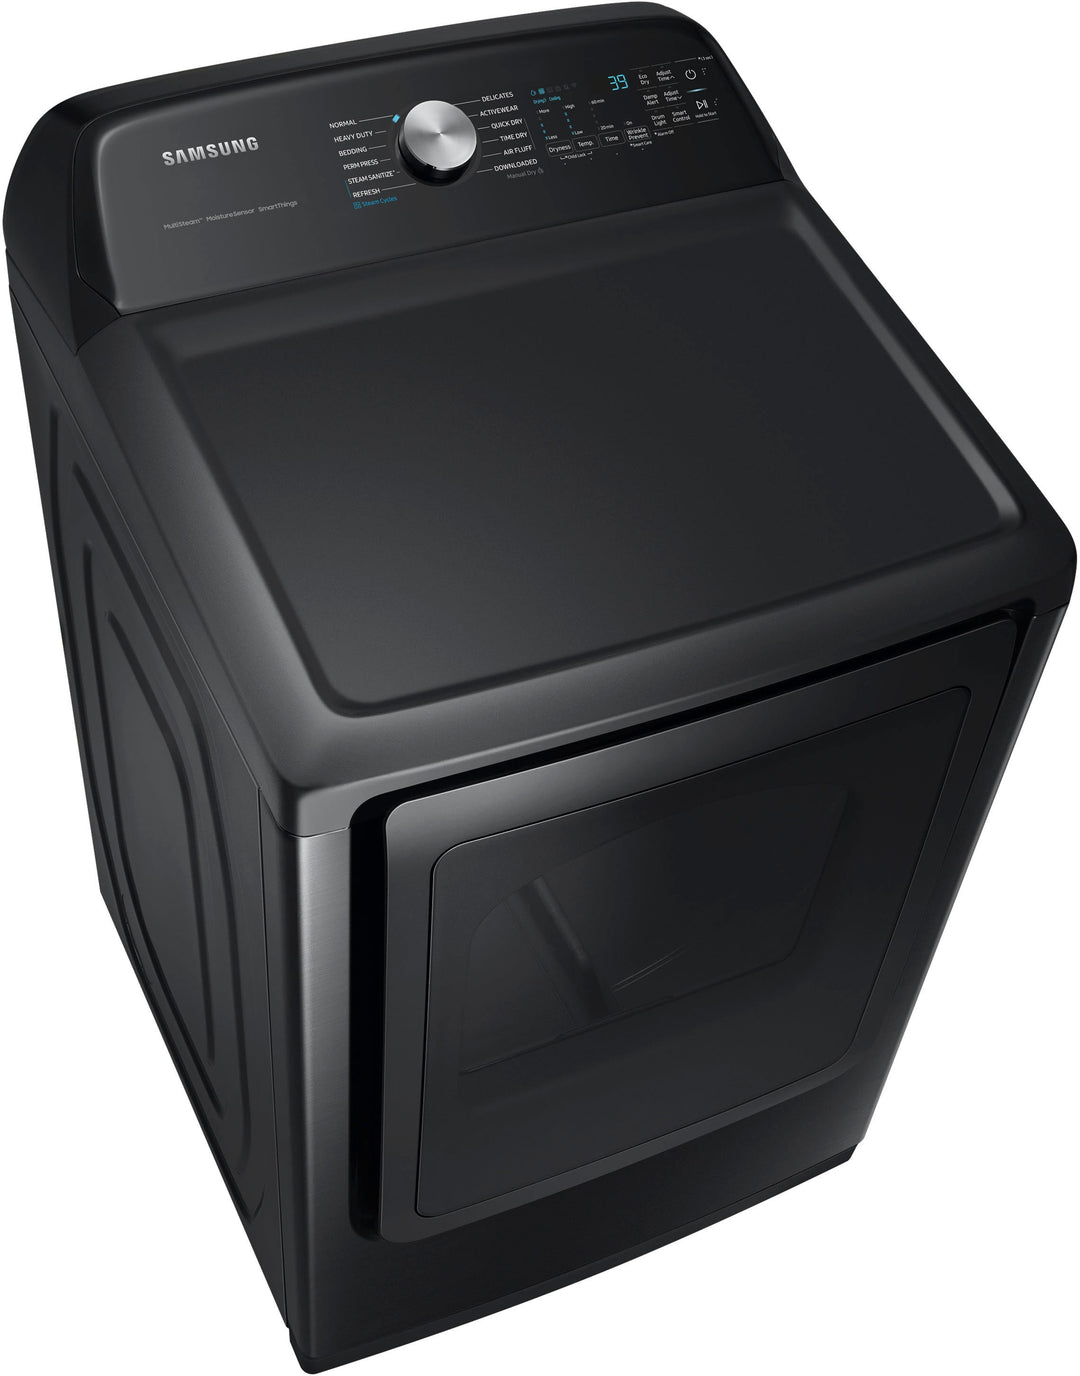 Samsung - 7.4 cu. ft. Smart Gas Dryer with Steam Sanitize+ - Brushed black_4